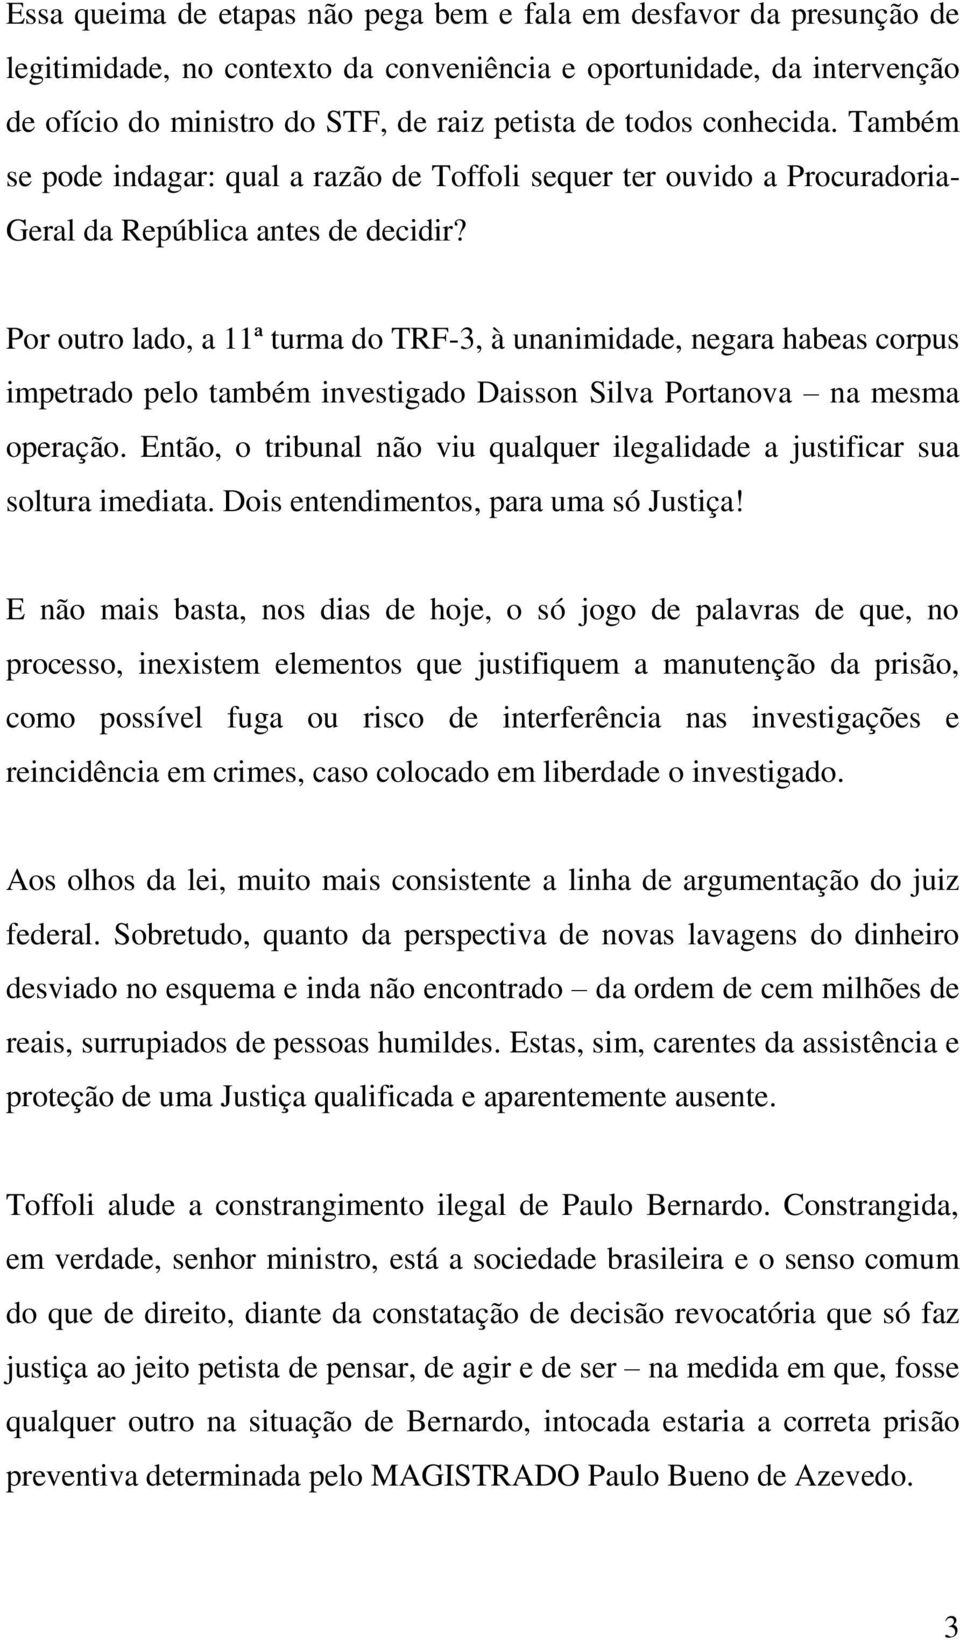 Por outro lado, a 11ª turma do TRF-3, à unanimidade, negara habeas corpus impetrado pelo também investigado Daisson Silva Portanova na mesma operação.